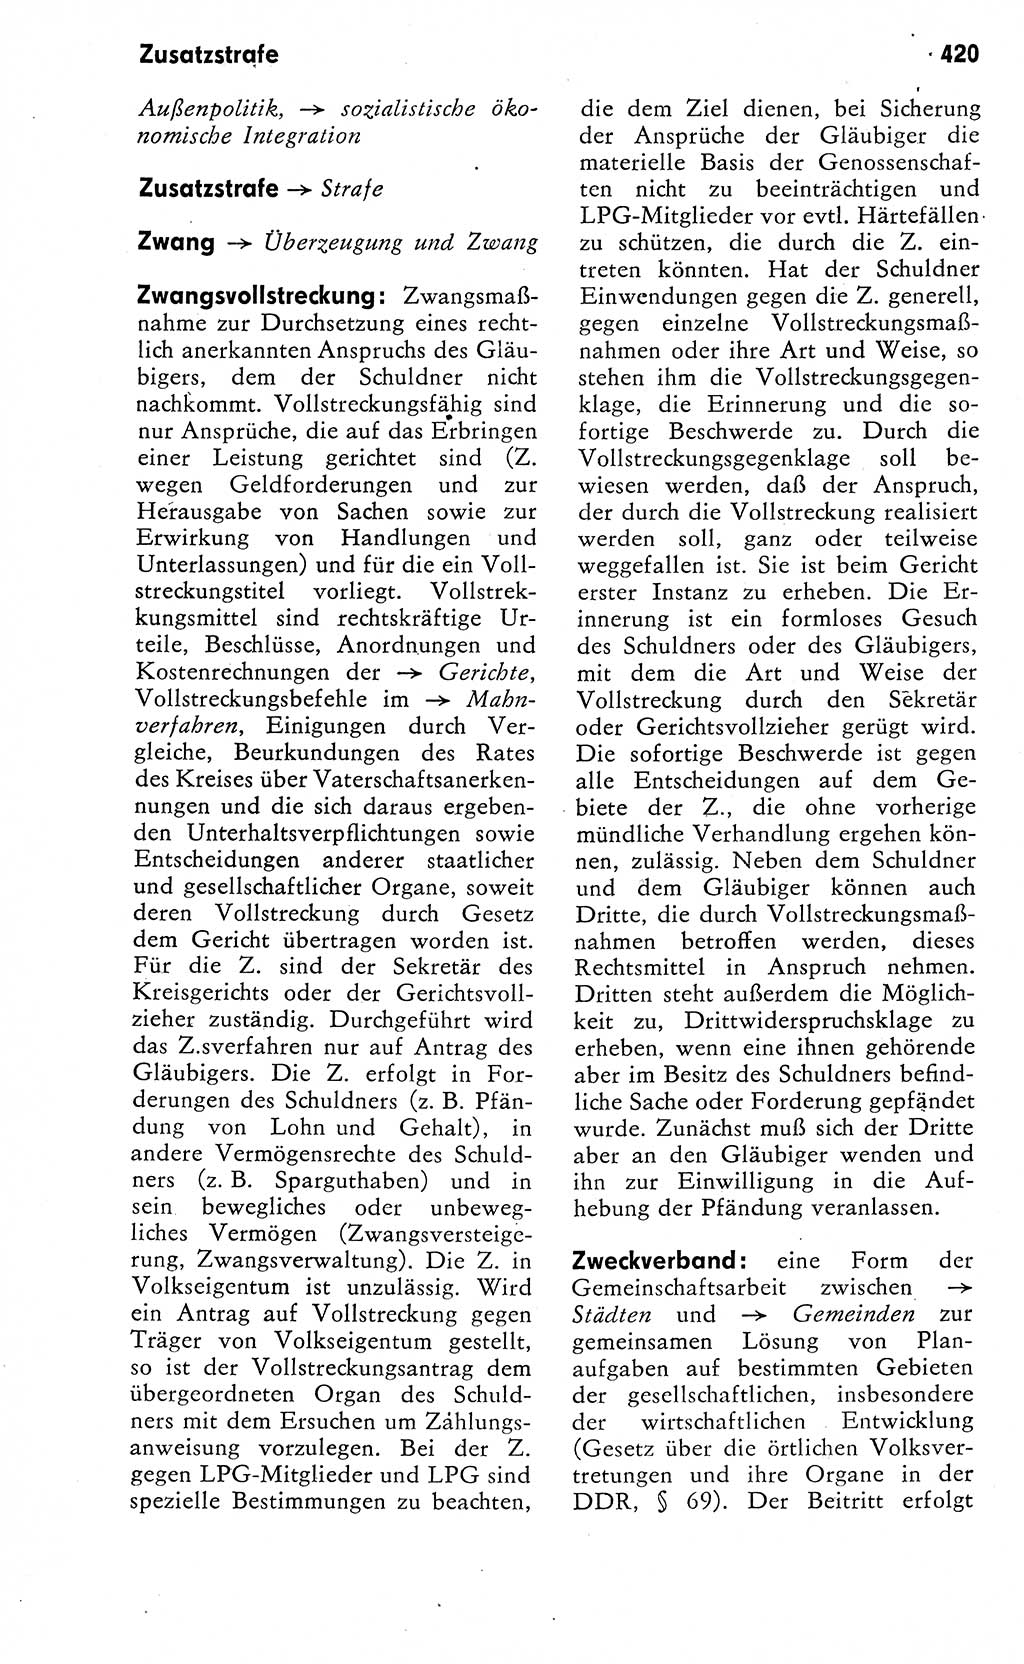 Wörterbuch zum sozialistischen Staat [Deutsche Demokratische Republik (DDR)] 1974, Seite 420 (Wb. soz. St. DDR 1974, S. 420)